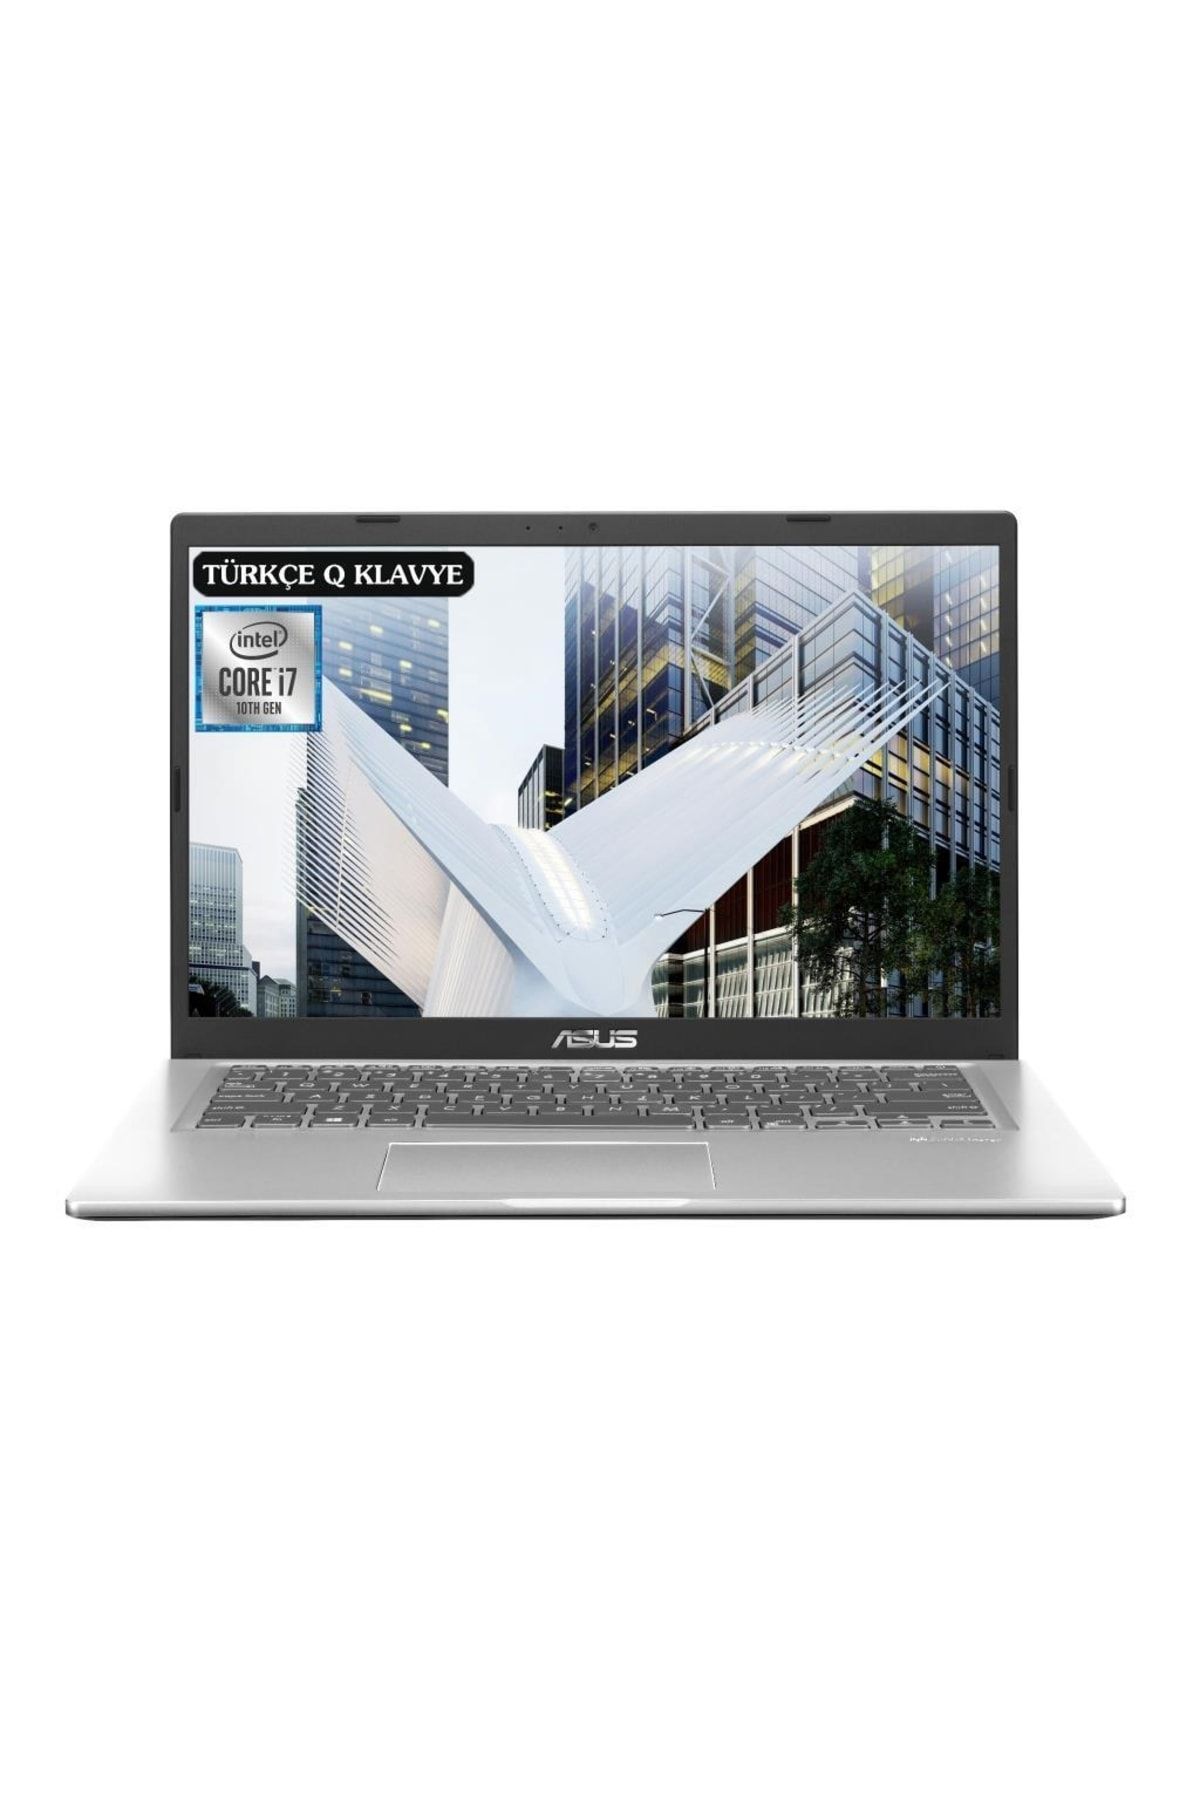 ASUS Vivobook X415ja-ek1654a2 I7-1065g7 16gb 256ssd 14" Fullhd Freedos Taşınabilir Bilgisayar